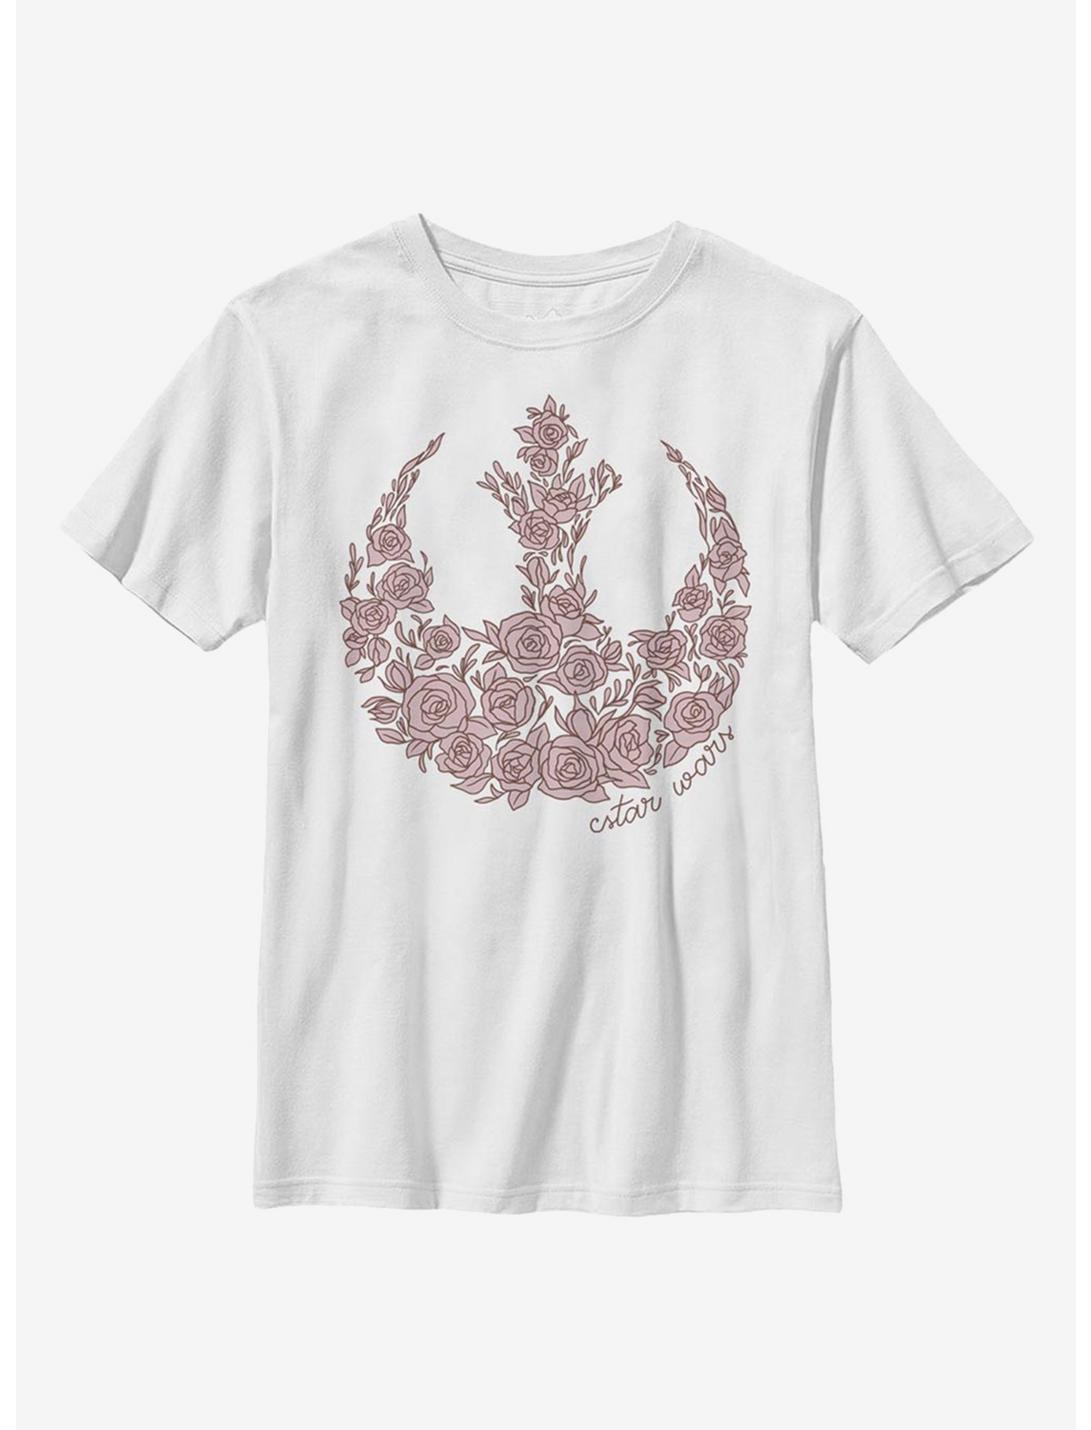 Star Wars Rose Rebel Youth T-Shirt, WHITE, hi-res